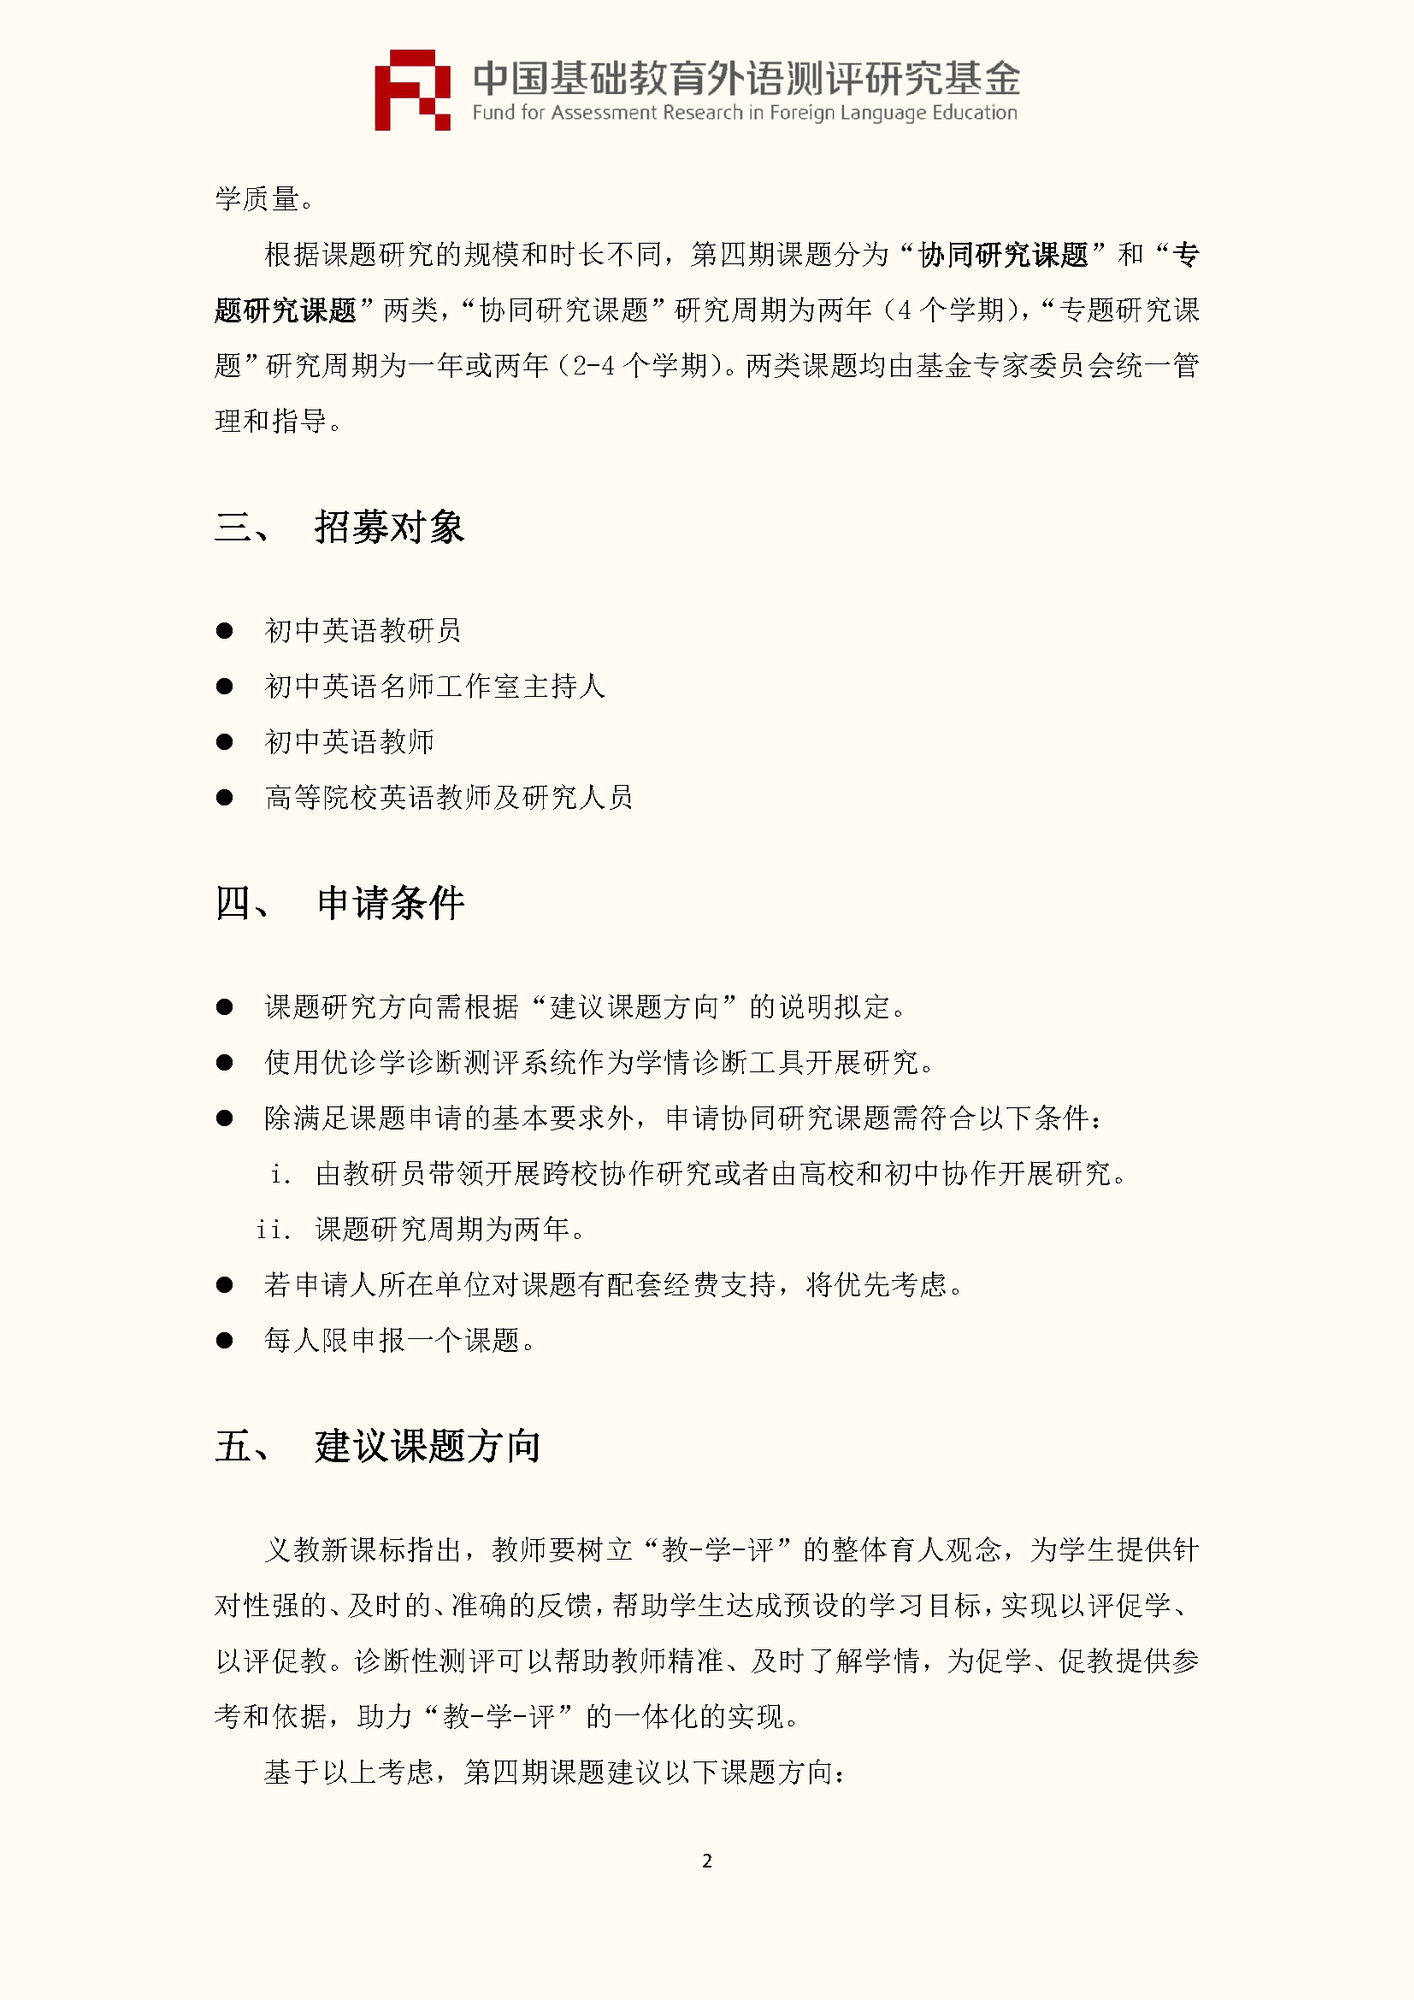 0520-”中国基础教育外语测评研究基金“项目第四期课题申报指南_页面_04